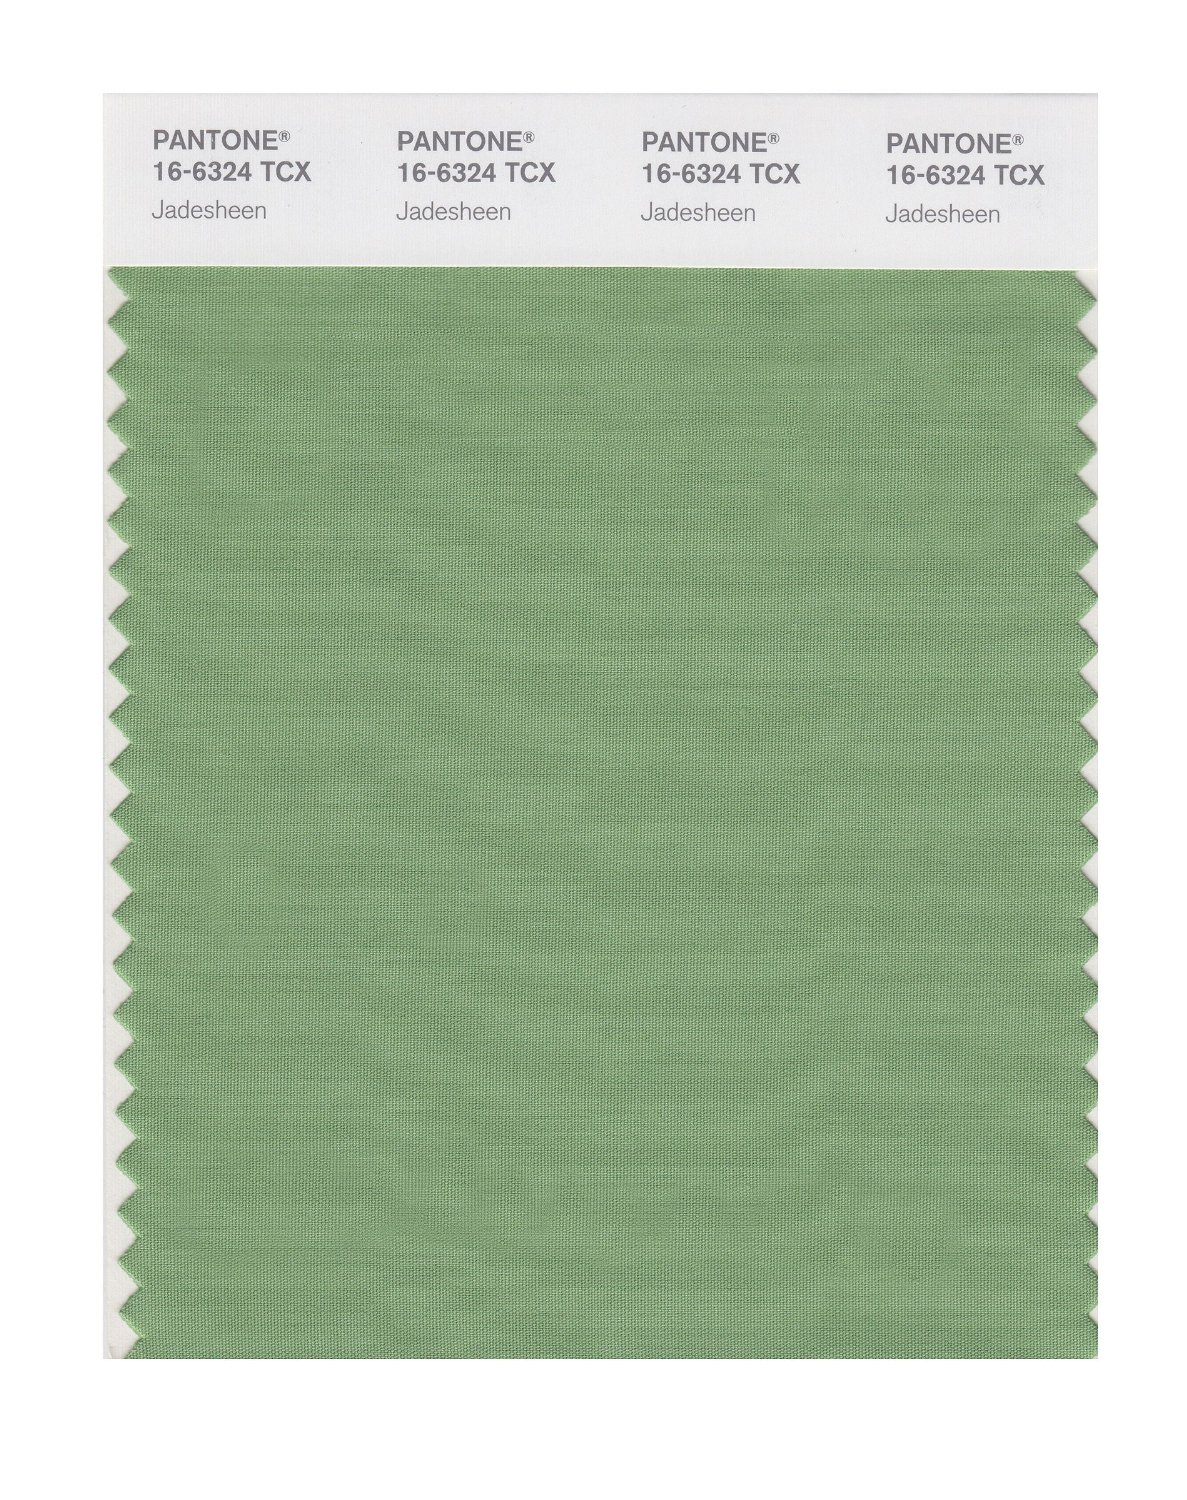 Pantone Cotton Swatch 16-6324 Jadesheen